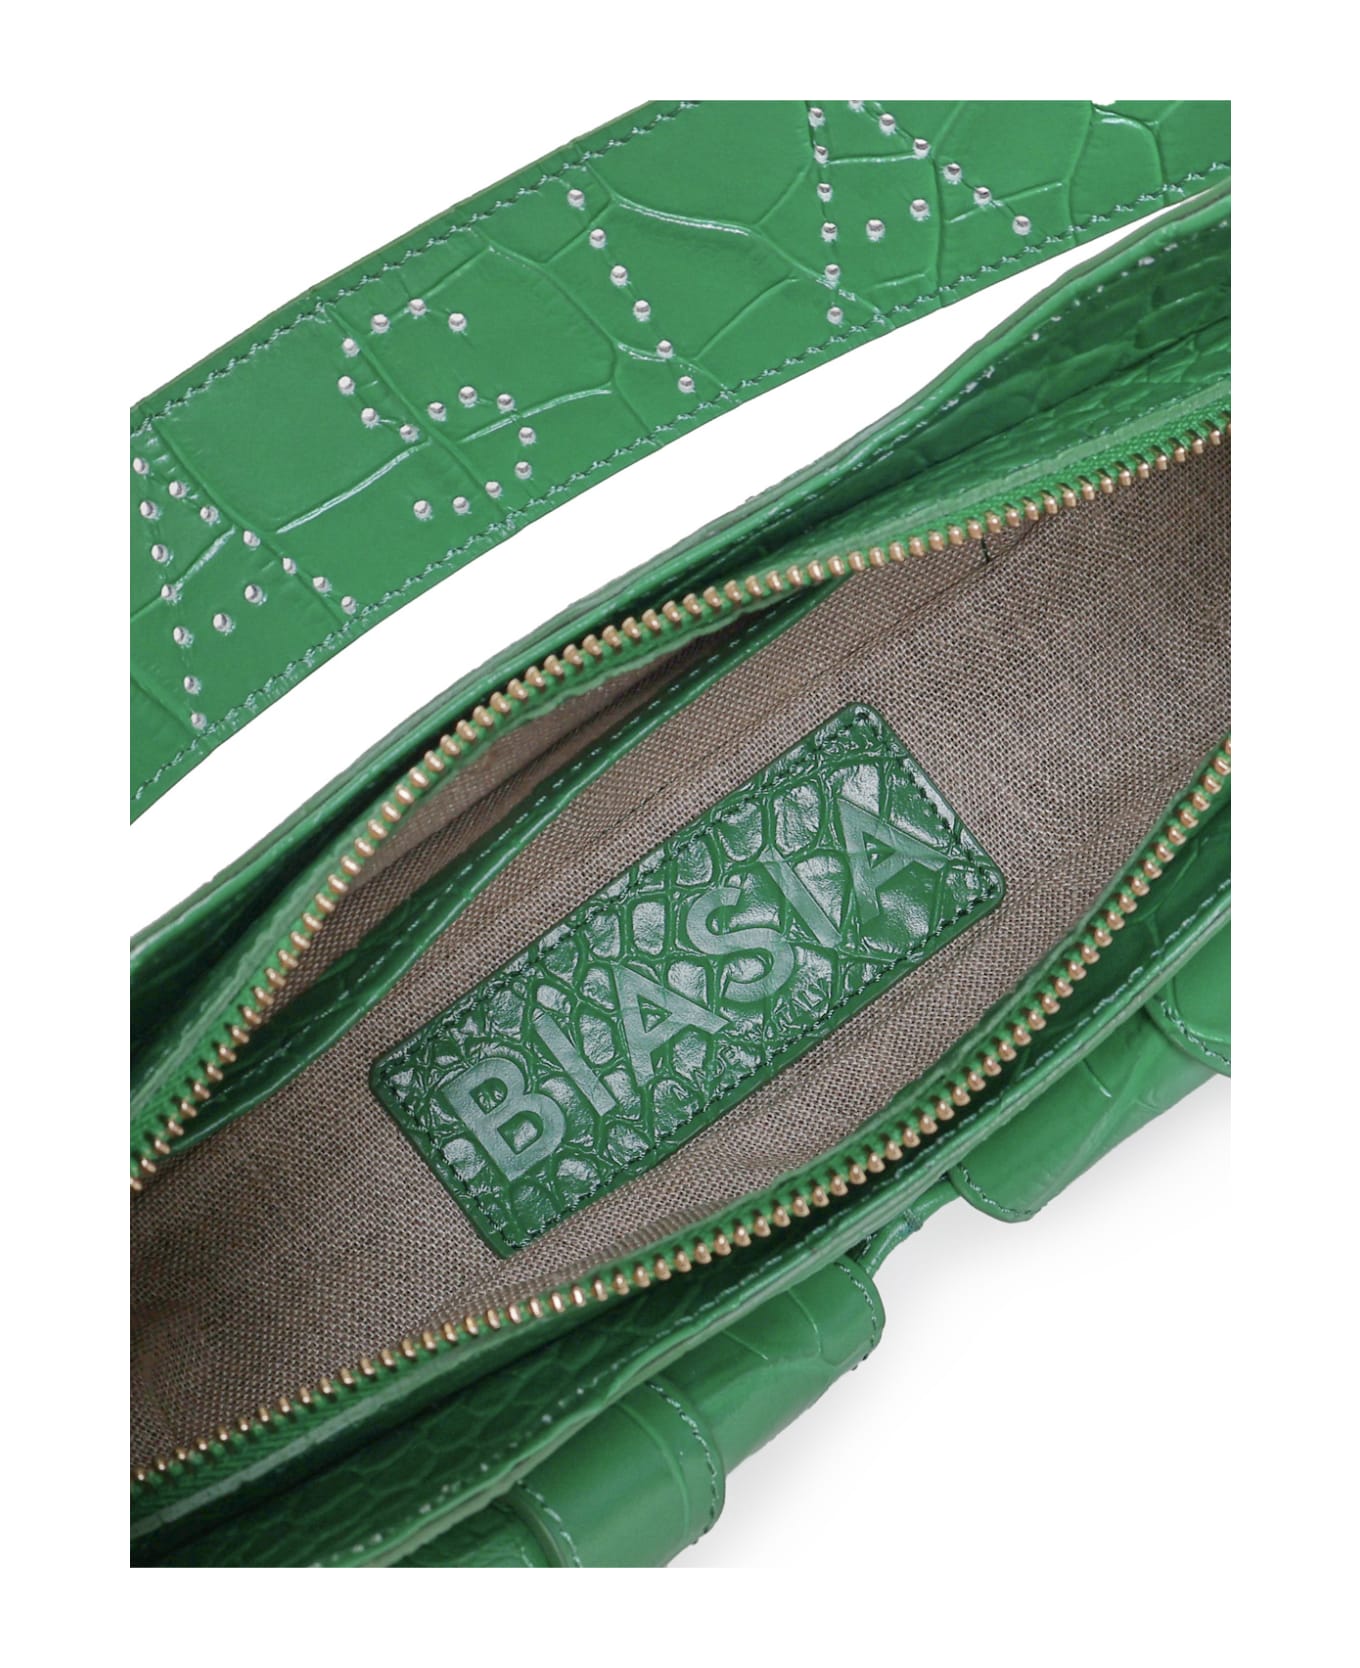 Biasia Shoulder Bag Y2k.001 - Emerald green